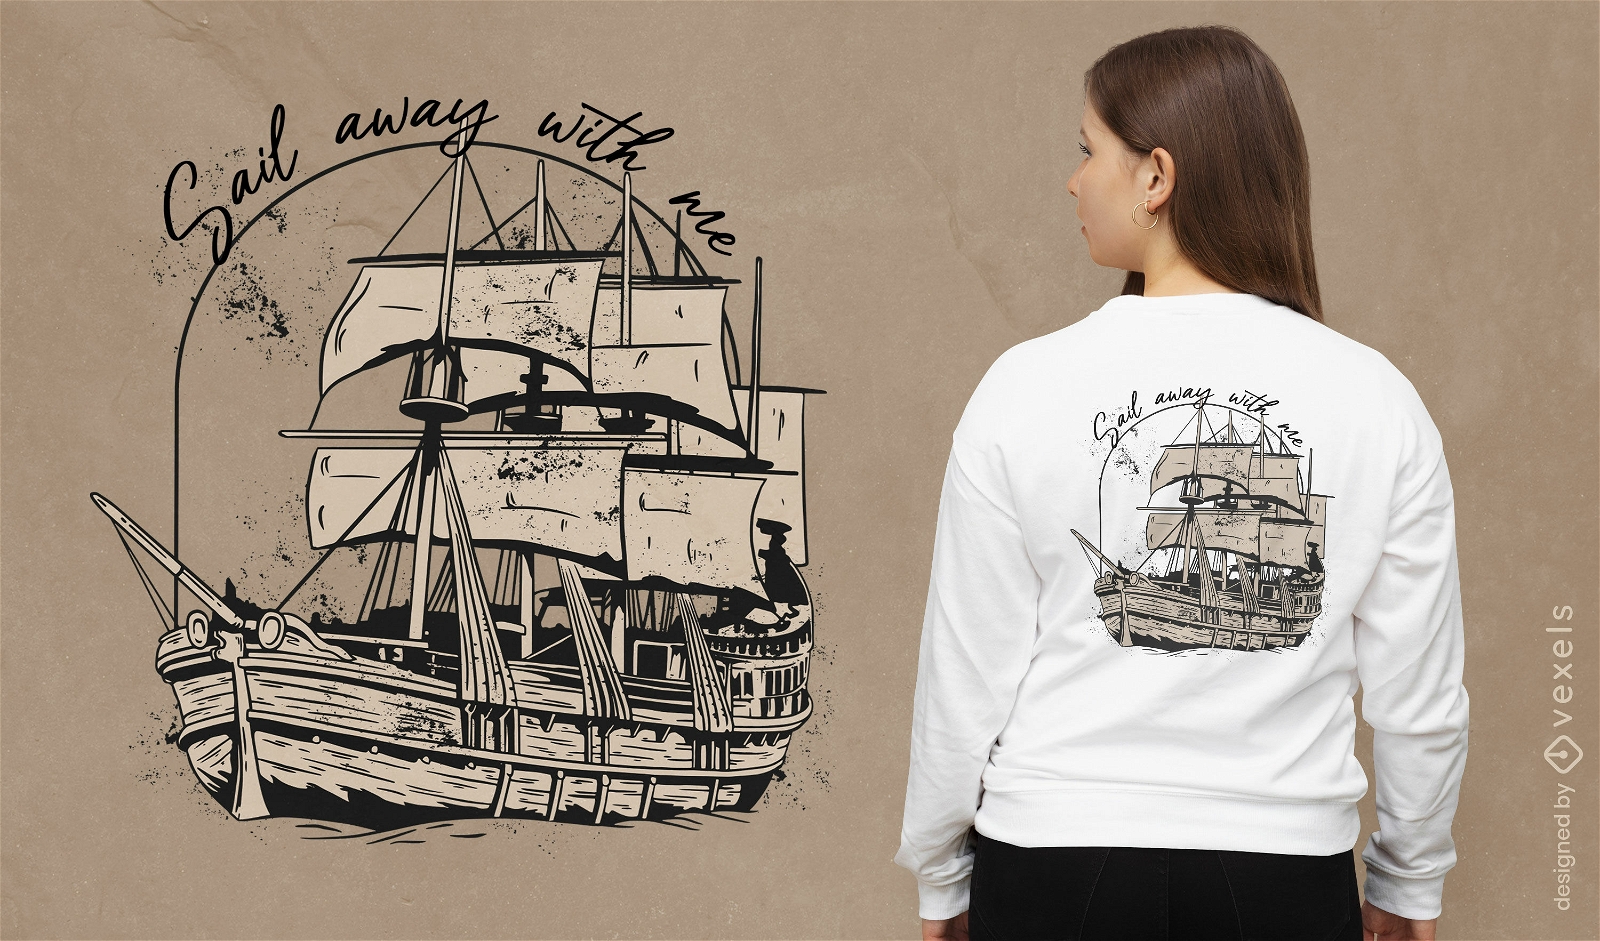 Sail away with me t-shirt design